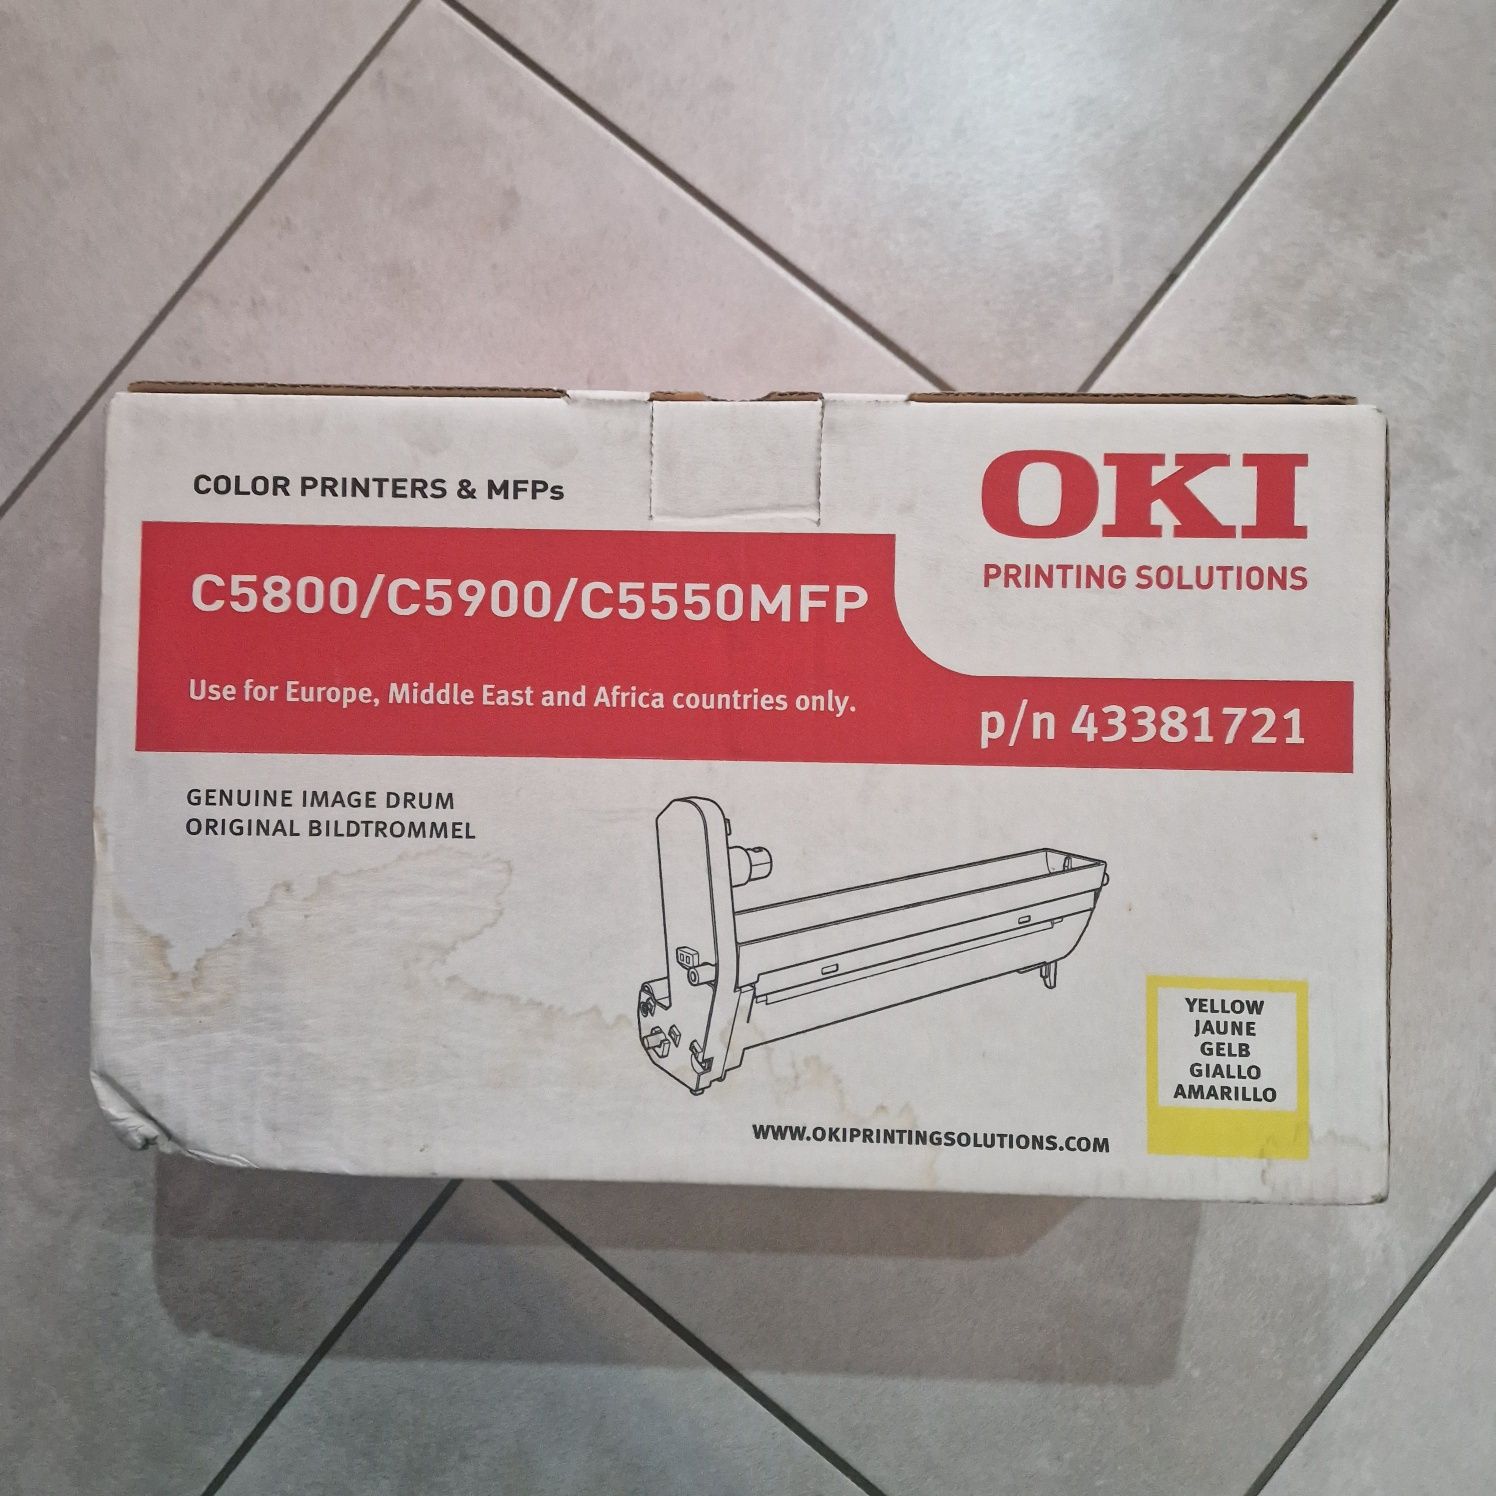 Bęben  toner do drukarki OKI C5800/C5900/C5550MFP black yellow cyan